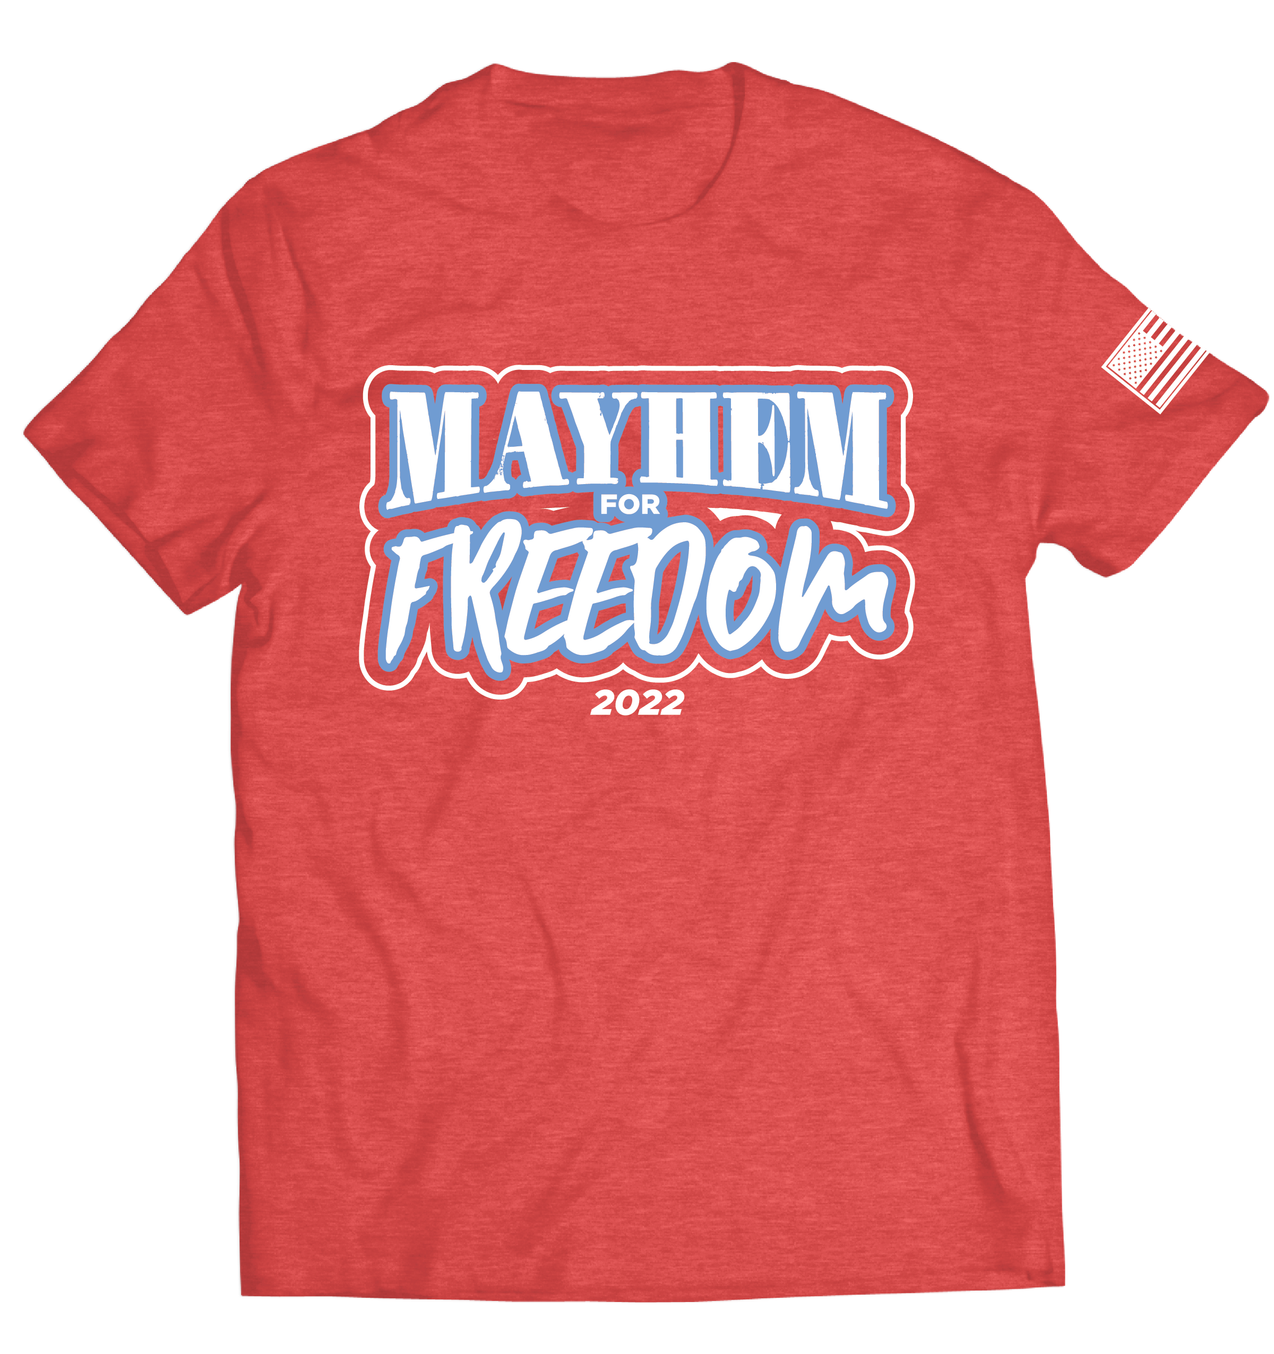 Media – Mayhem Gym